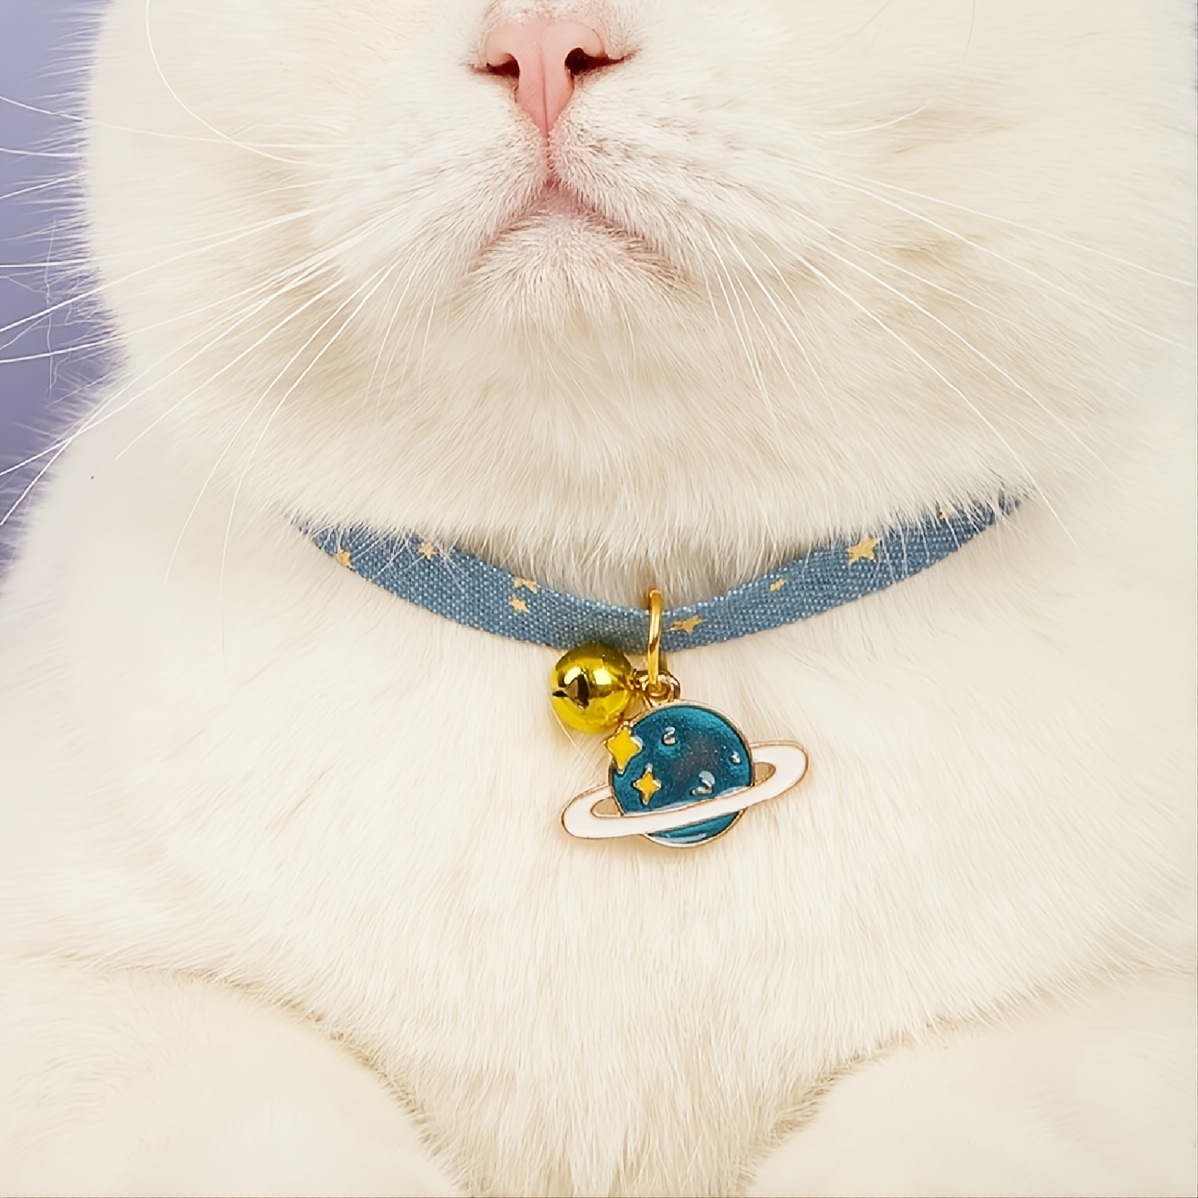 Cat Pendant Pet Collar